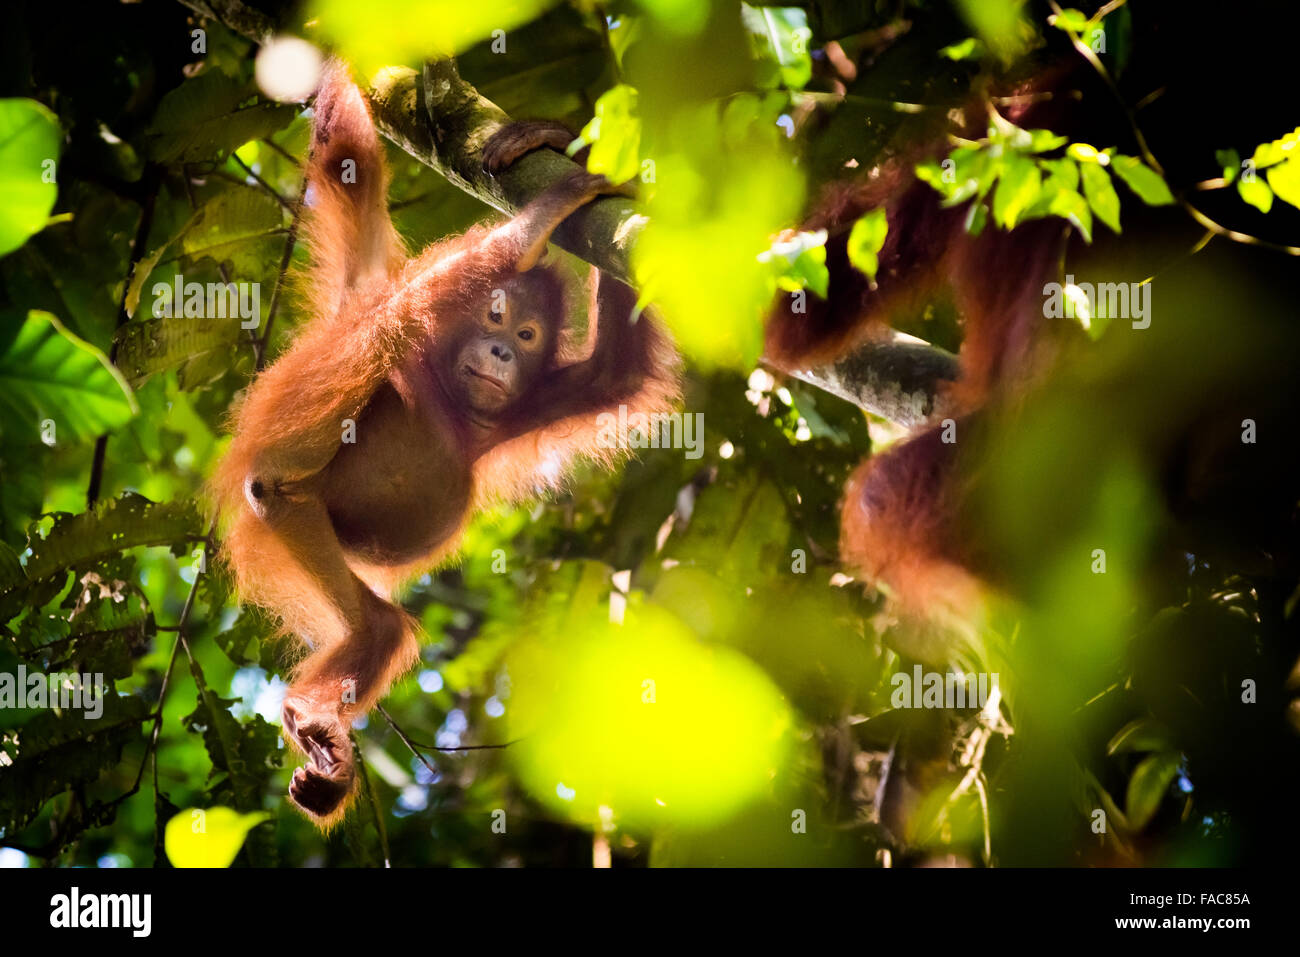 Jeune sauvage du nord-est de bornean orangutan (Pongo pygmaeus morio) accroché à la branche des arbres dans l'habitat naturel du parc national de Kutai. Banque D'Images